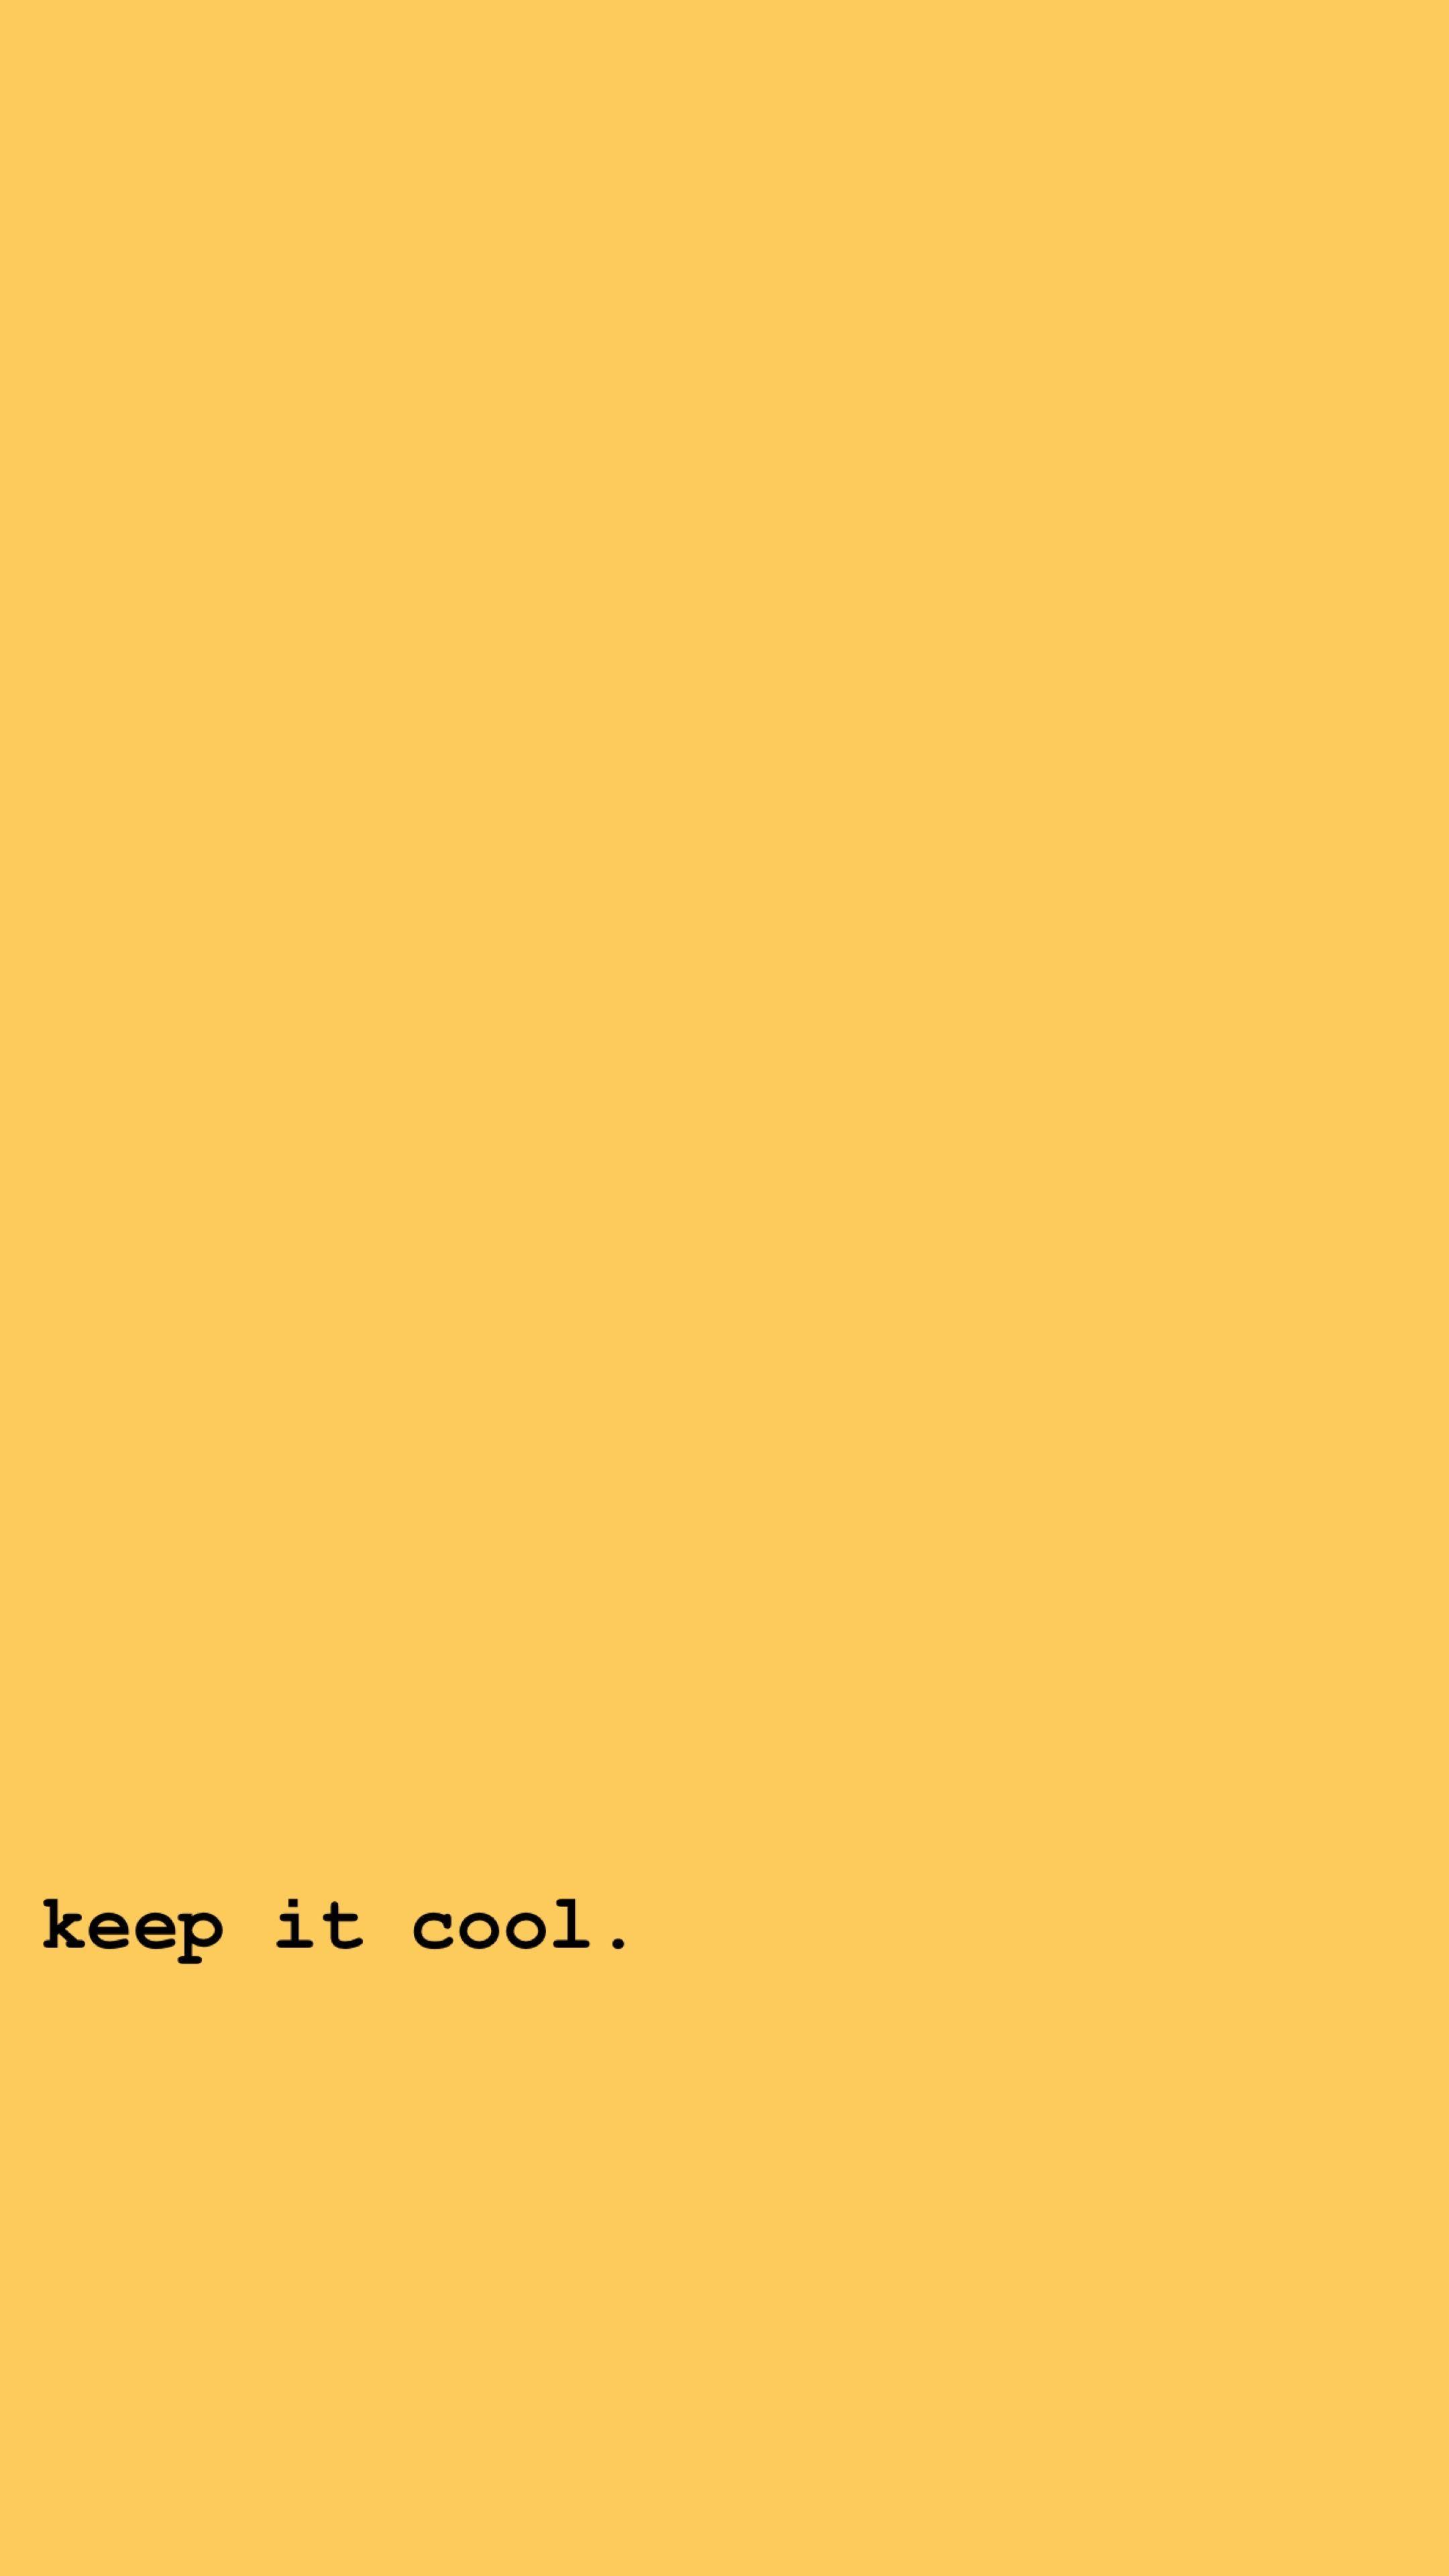 Keep it cool wallpaper - Pastel orange